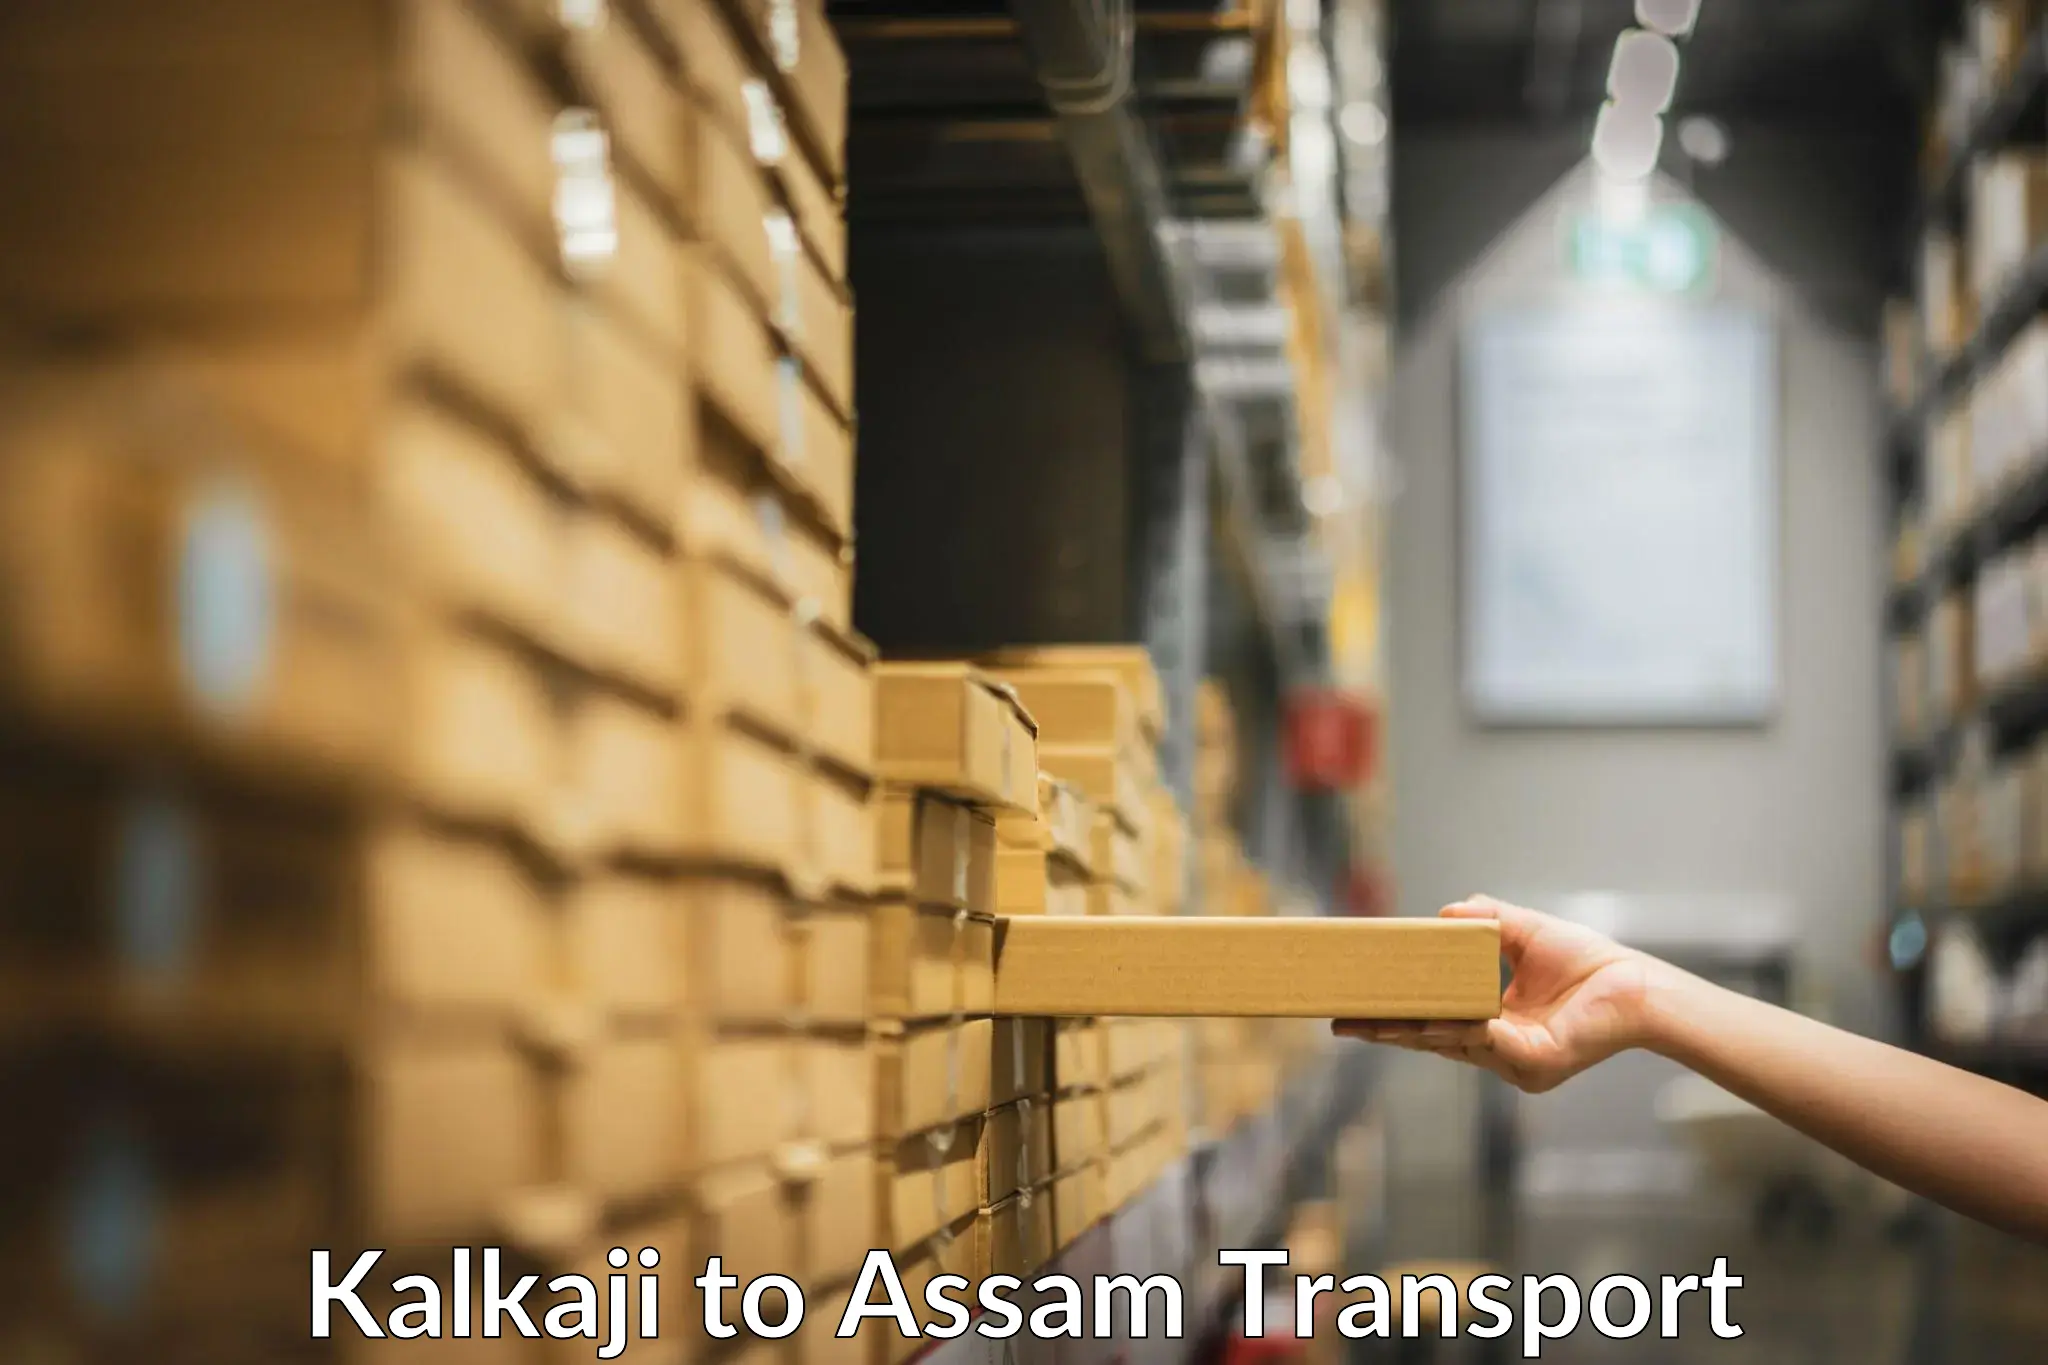 Cargo transportation services Kalkaji to Assam